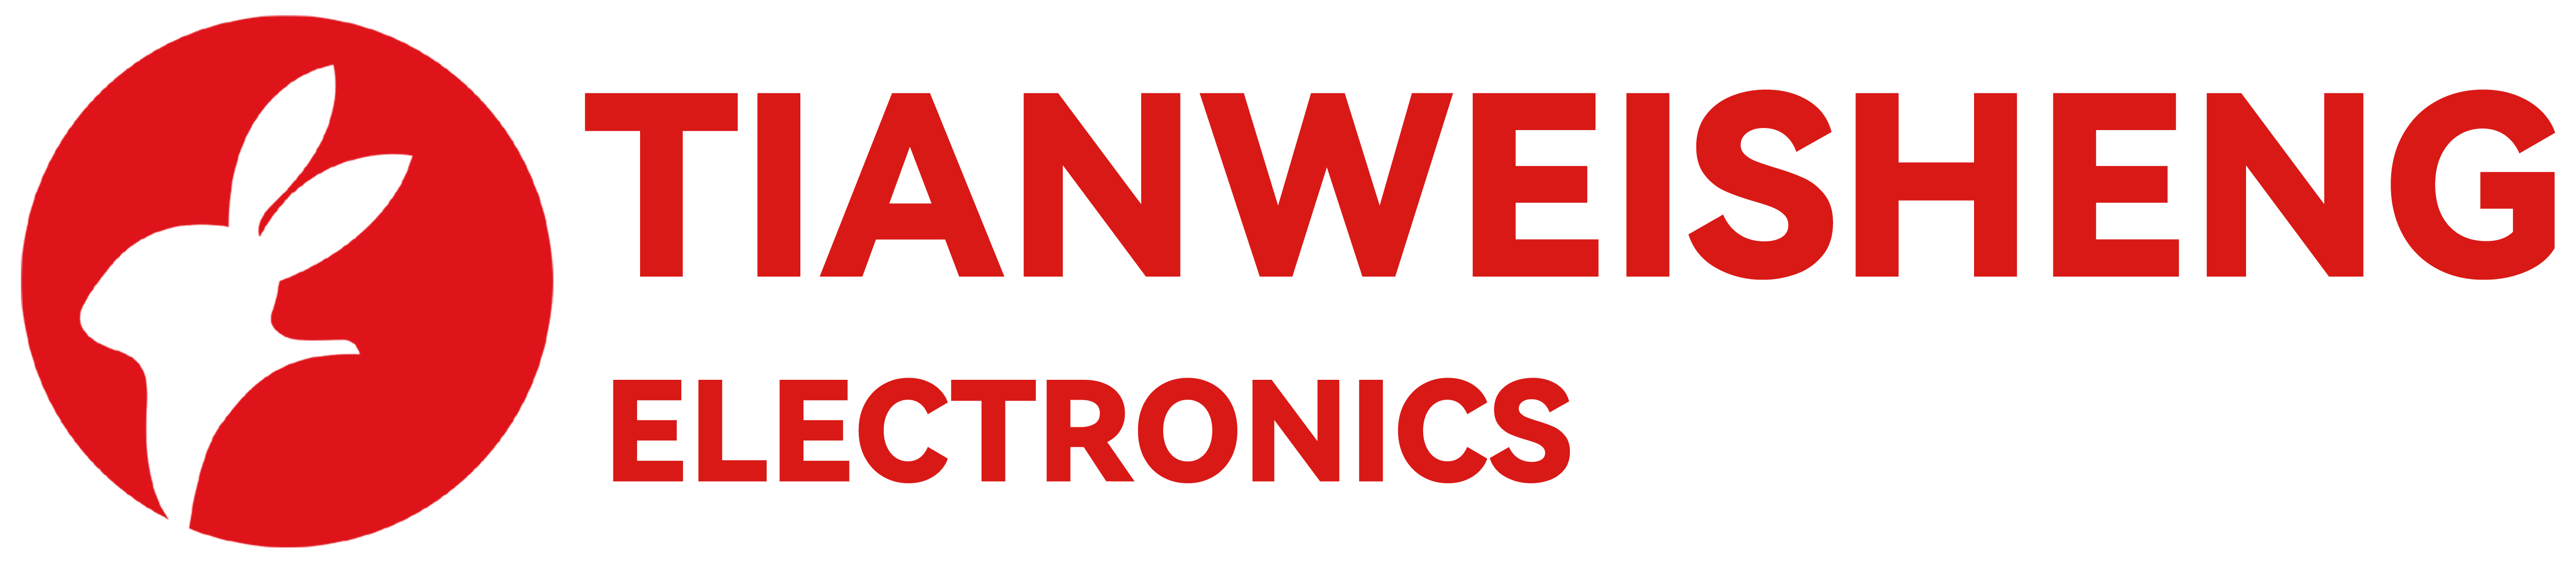 Shenzhen Tianweisheng Electronic Co., Ltd